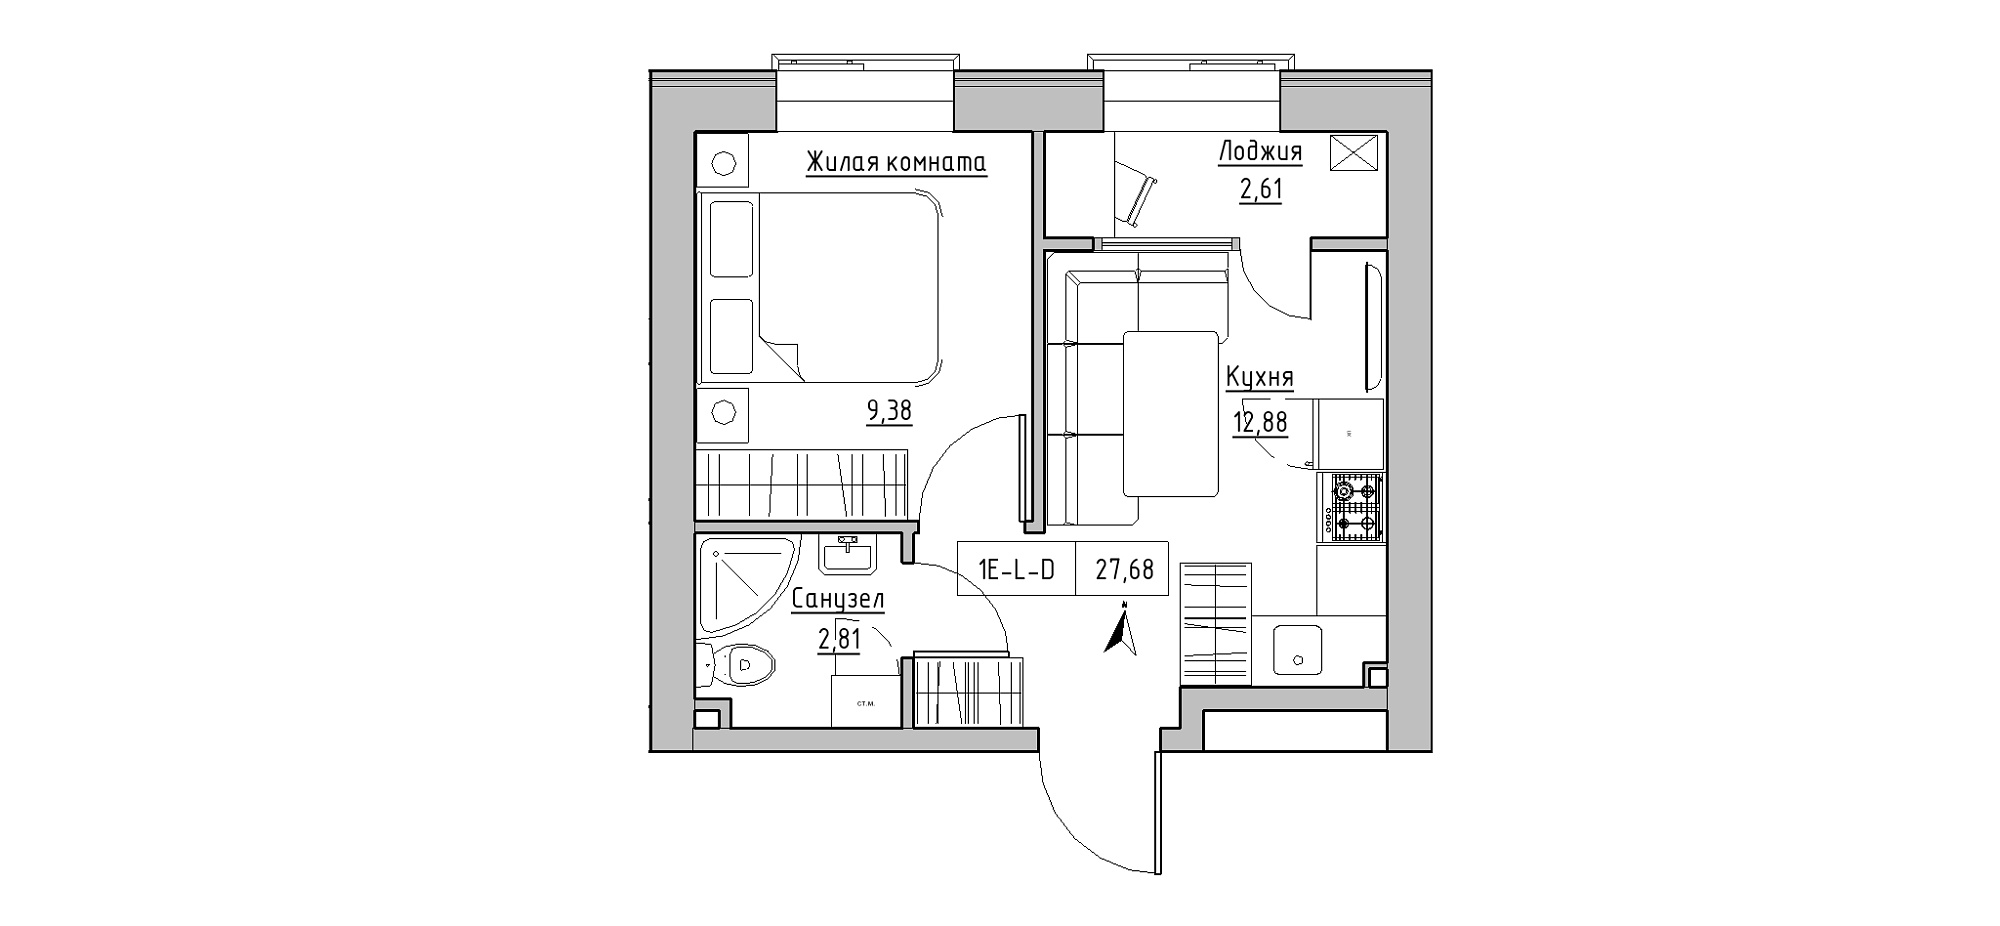 Планировка 1-к квартира площей 27.68м2, KS-020-01/0001.